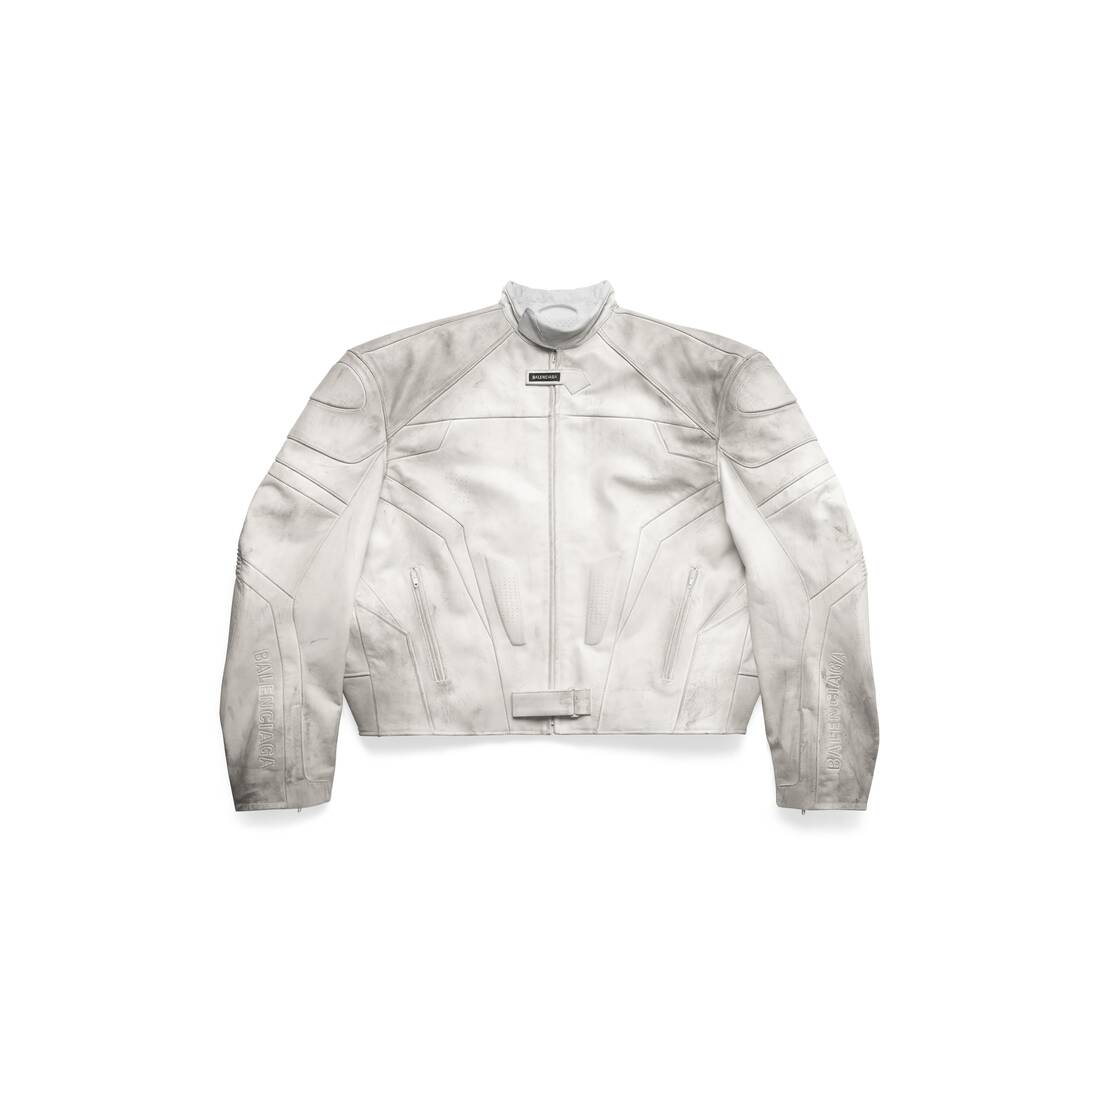 Balenciaga Leather Jacket Size IT 4244 Medium  eBay